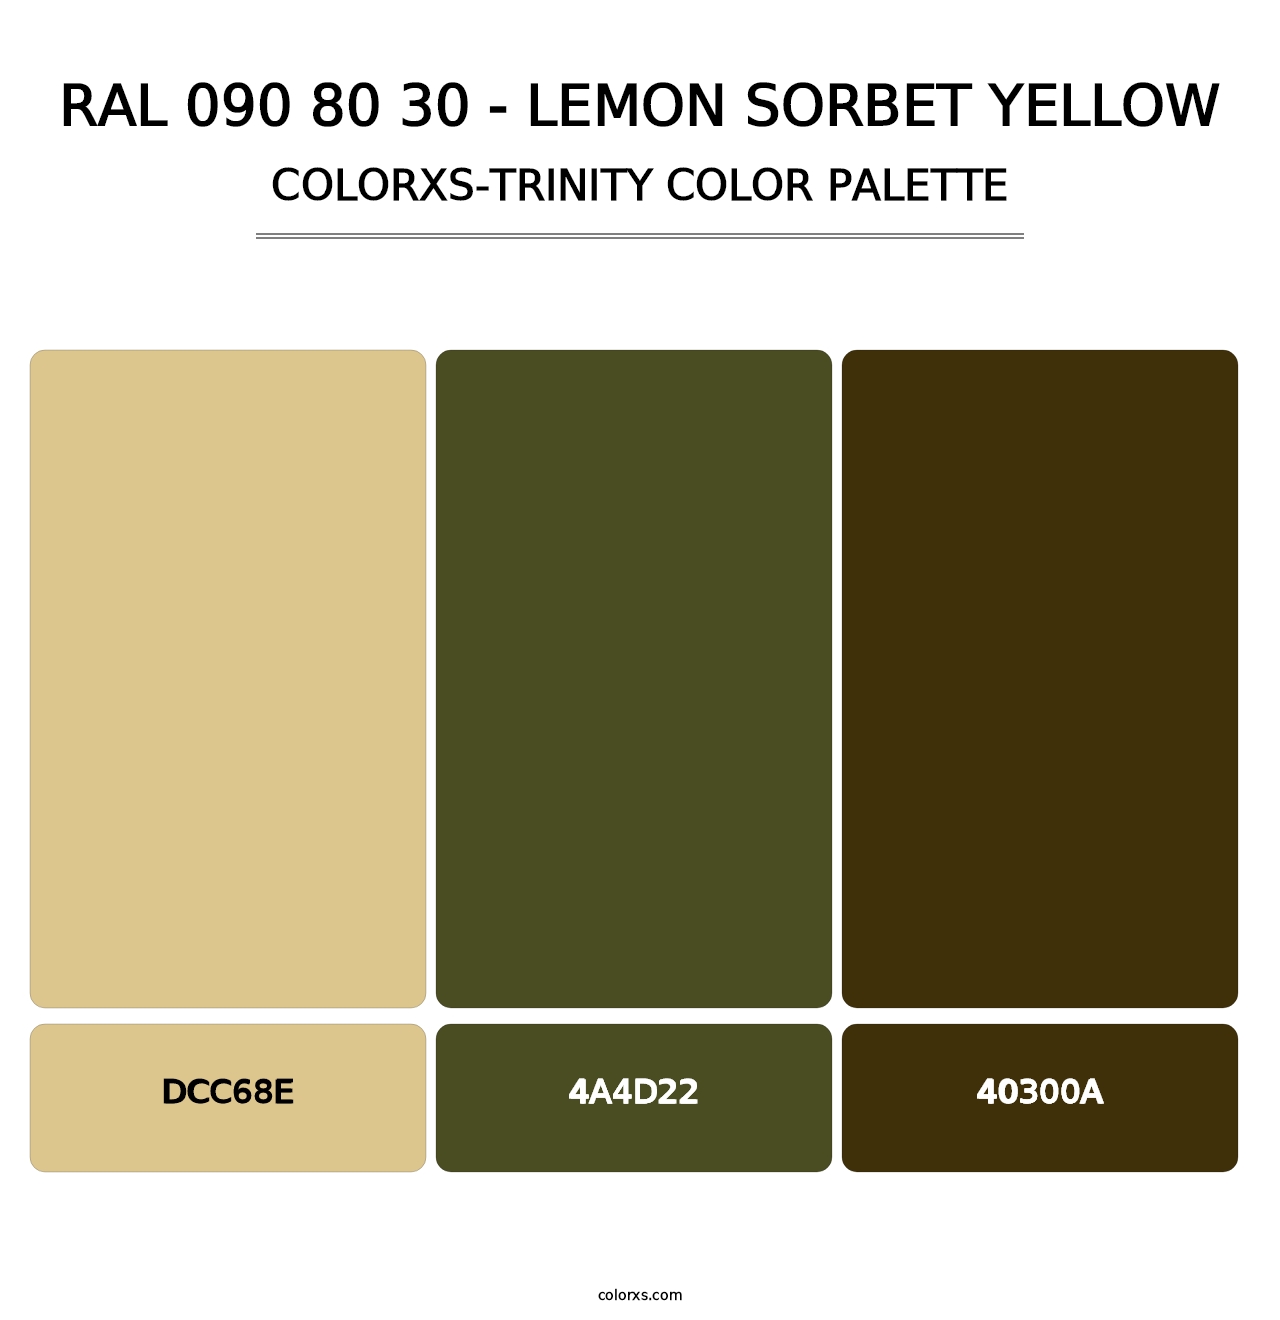 RAL 090 80 30 - Lemon Sorbet Yellow - Colorxs Trinity Palette